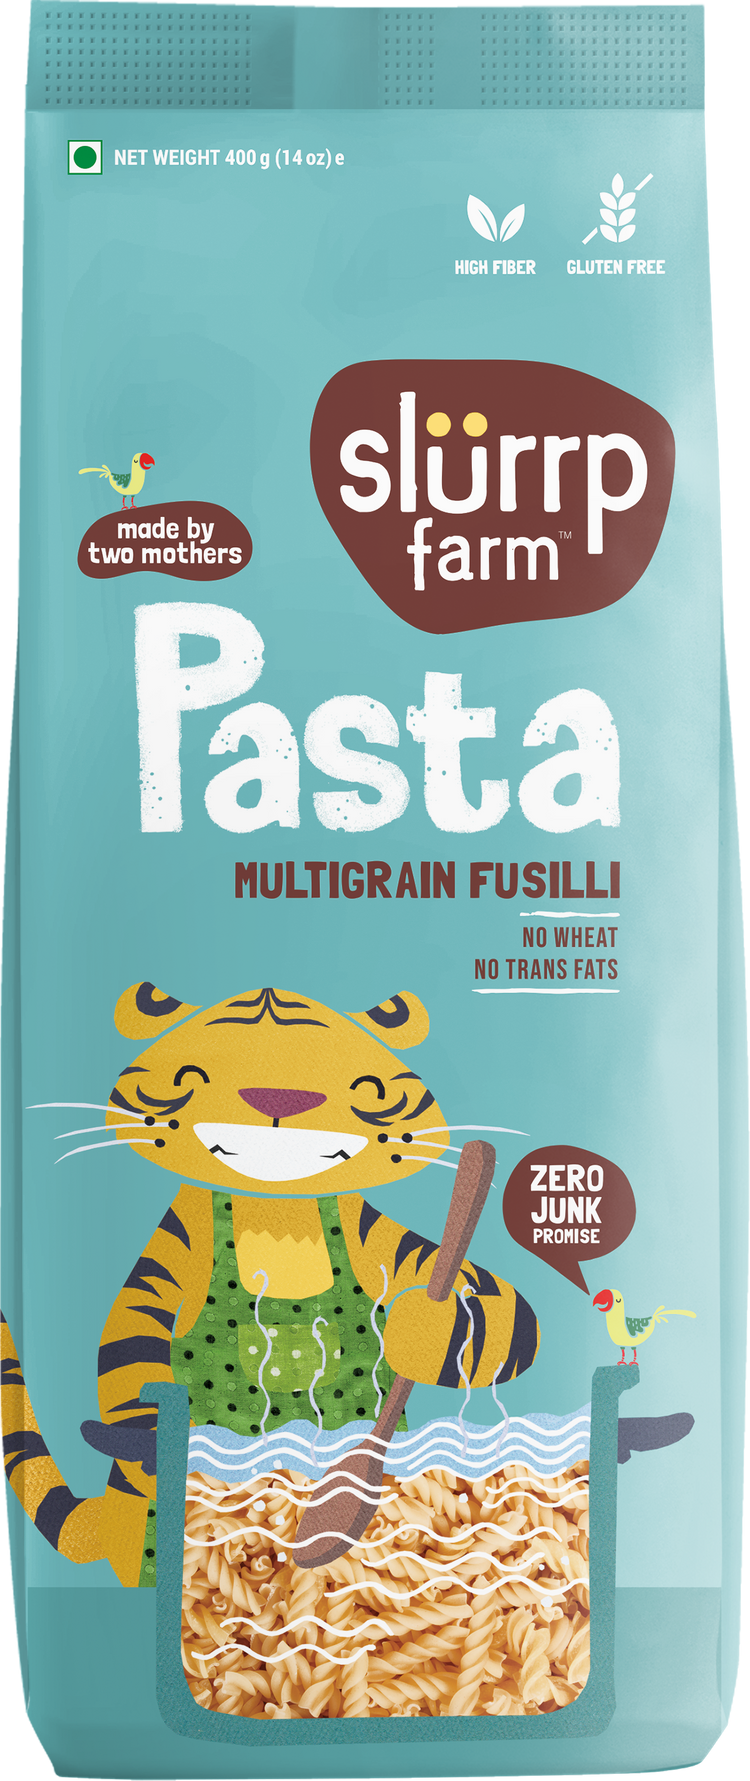 Fusilli Pasta - Gluten Free